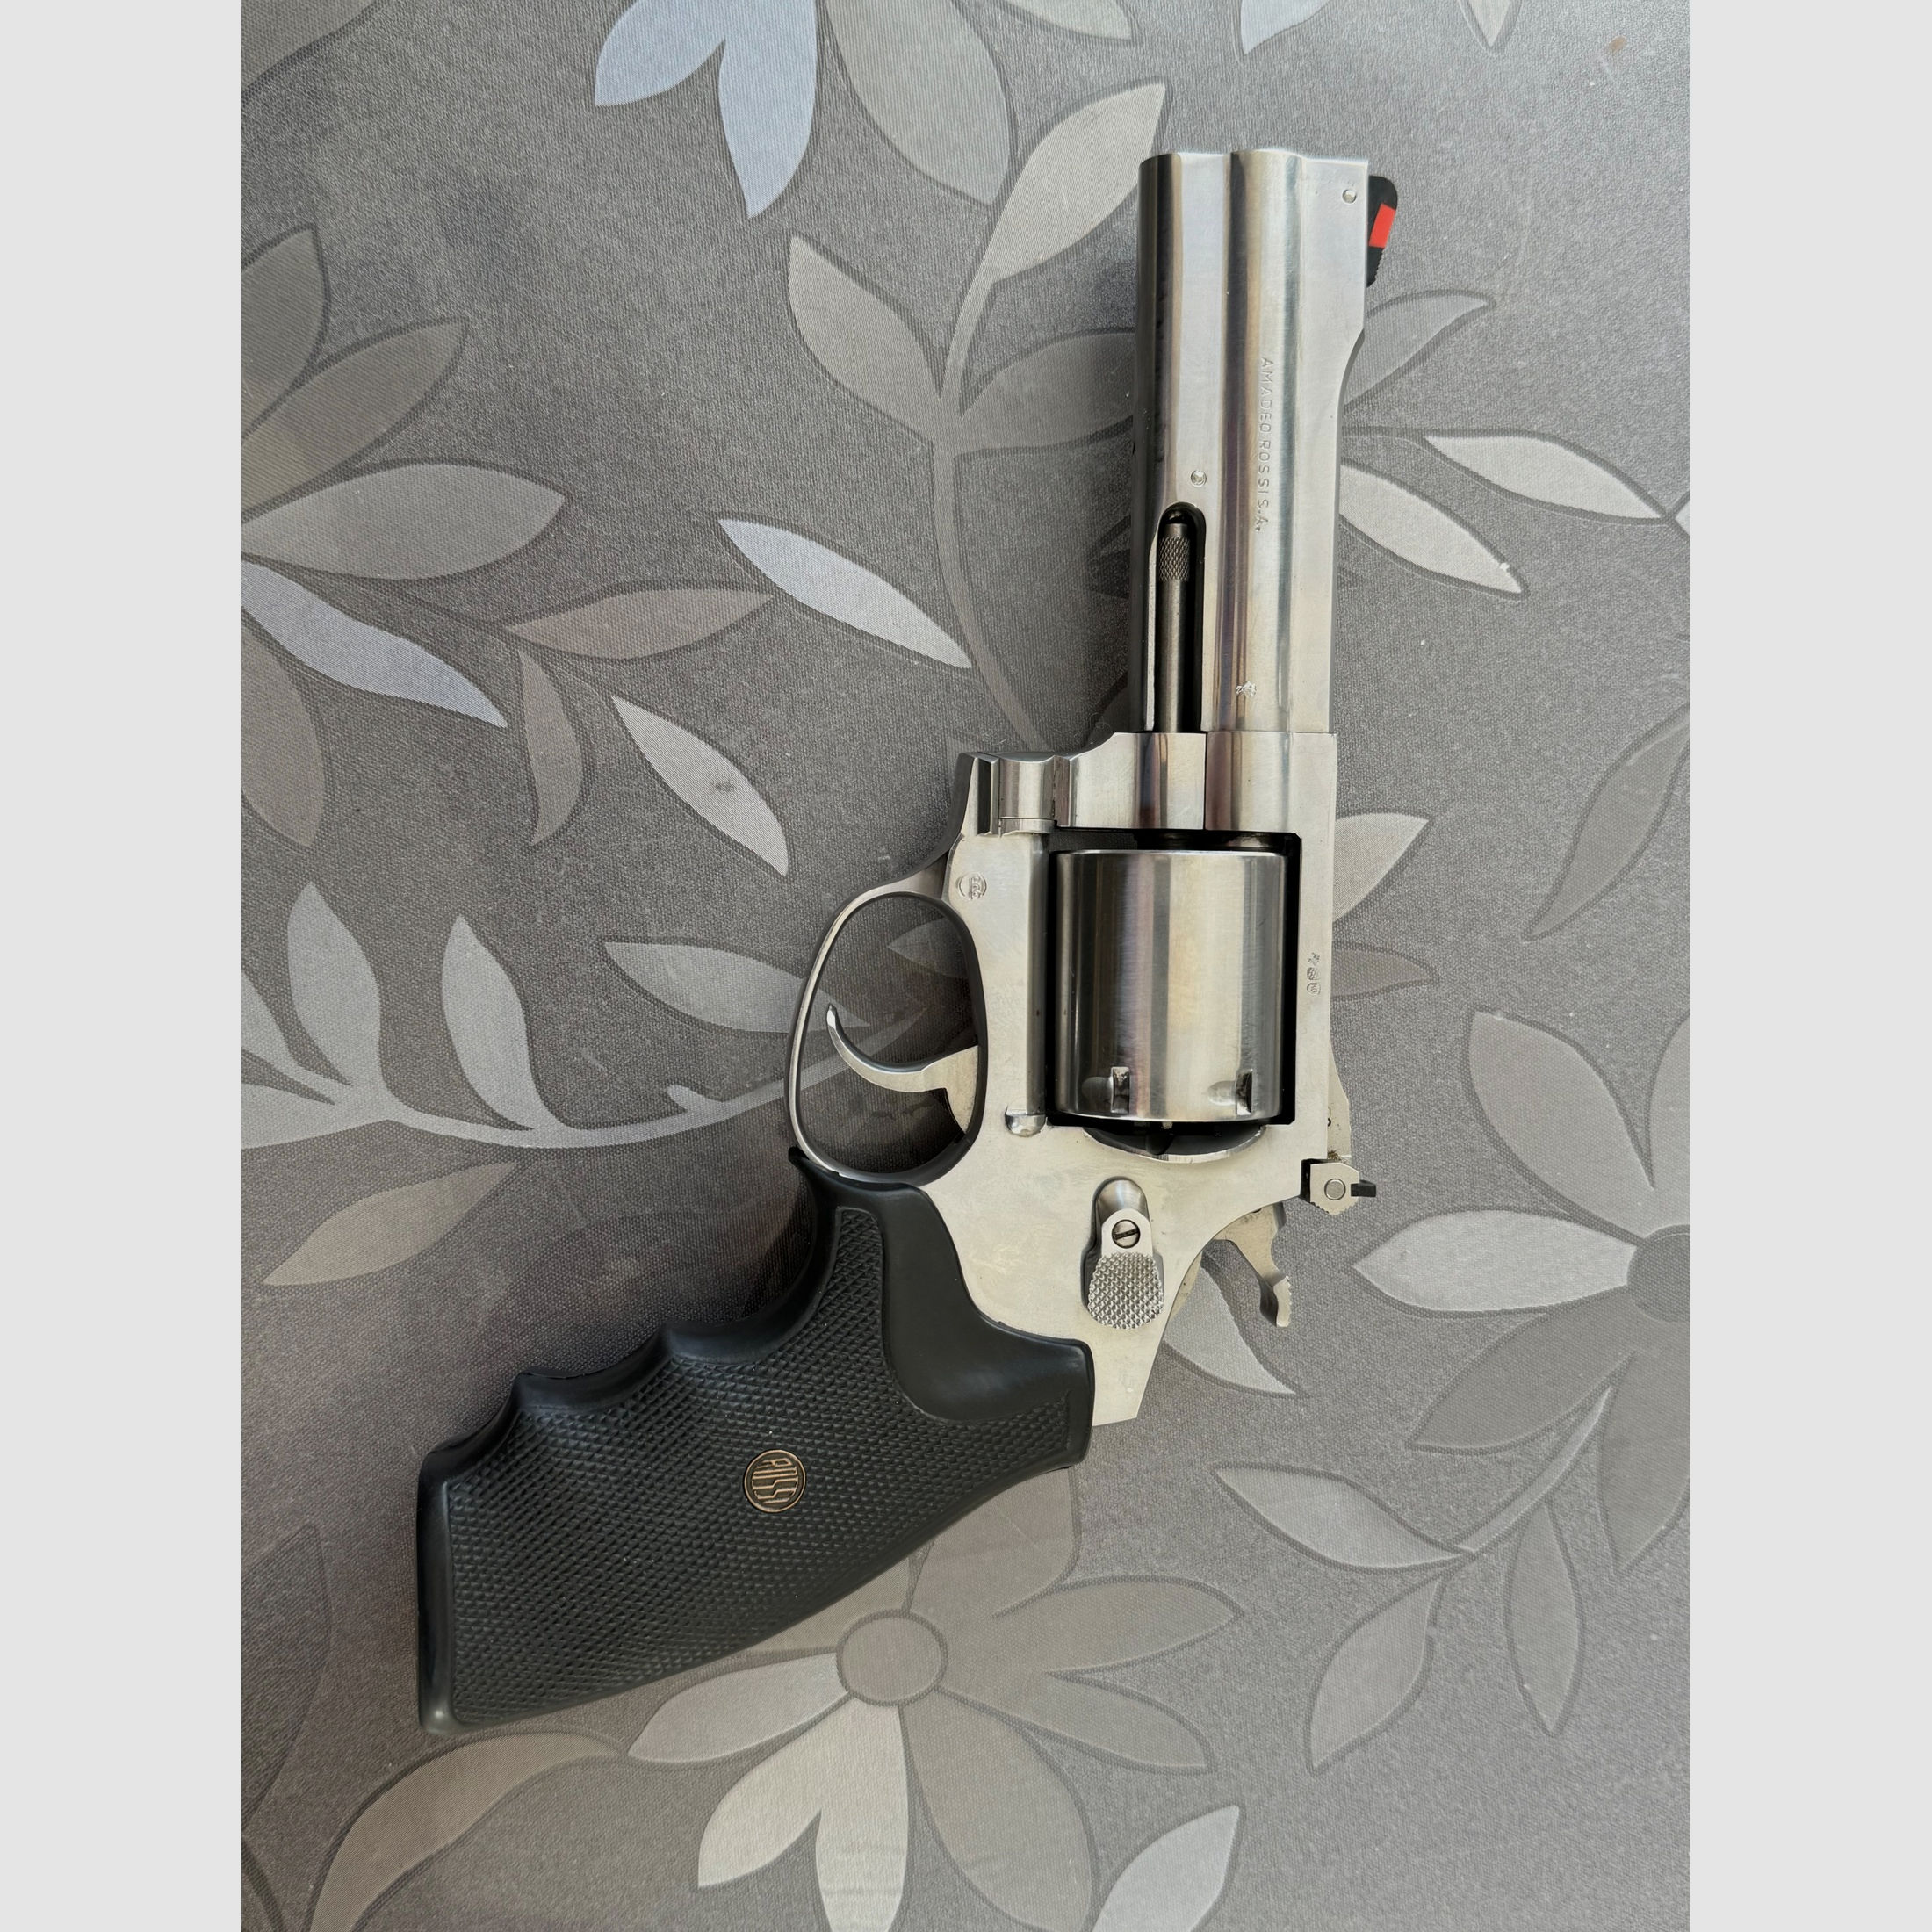 Rossi Revolver 357 Magnum